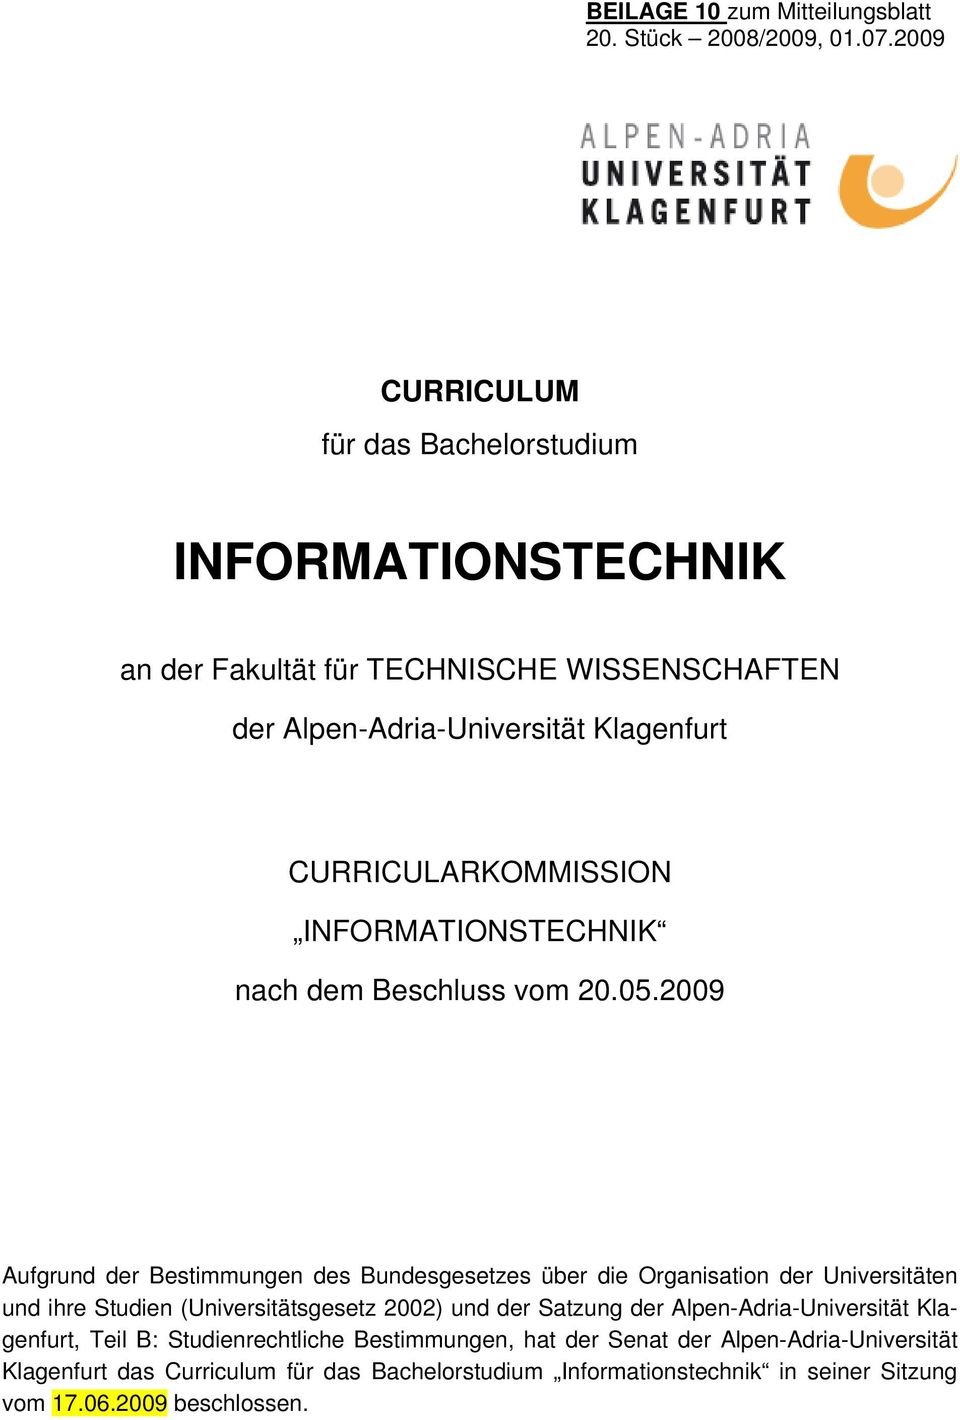 CURRICULARKOMMISSION INFORMATIONSTECHNIK nach dem Beschluss vom 0.05.